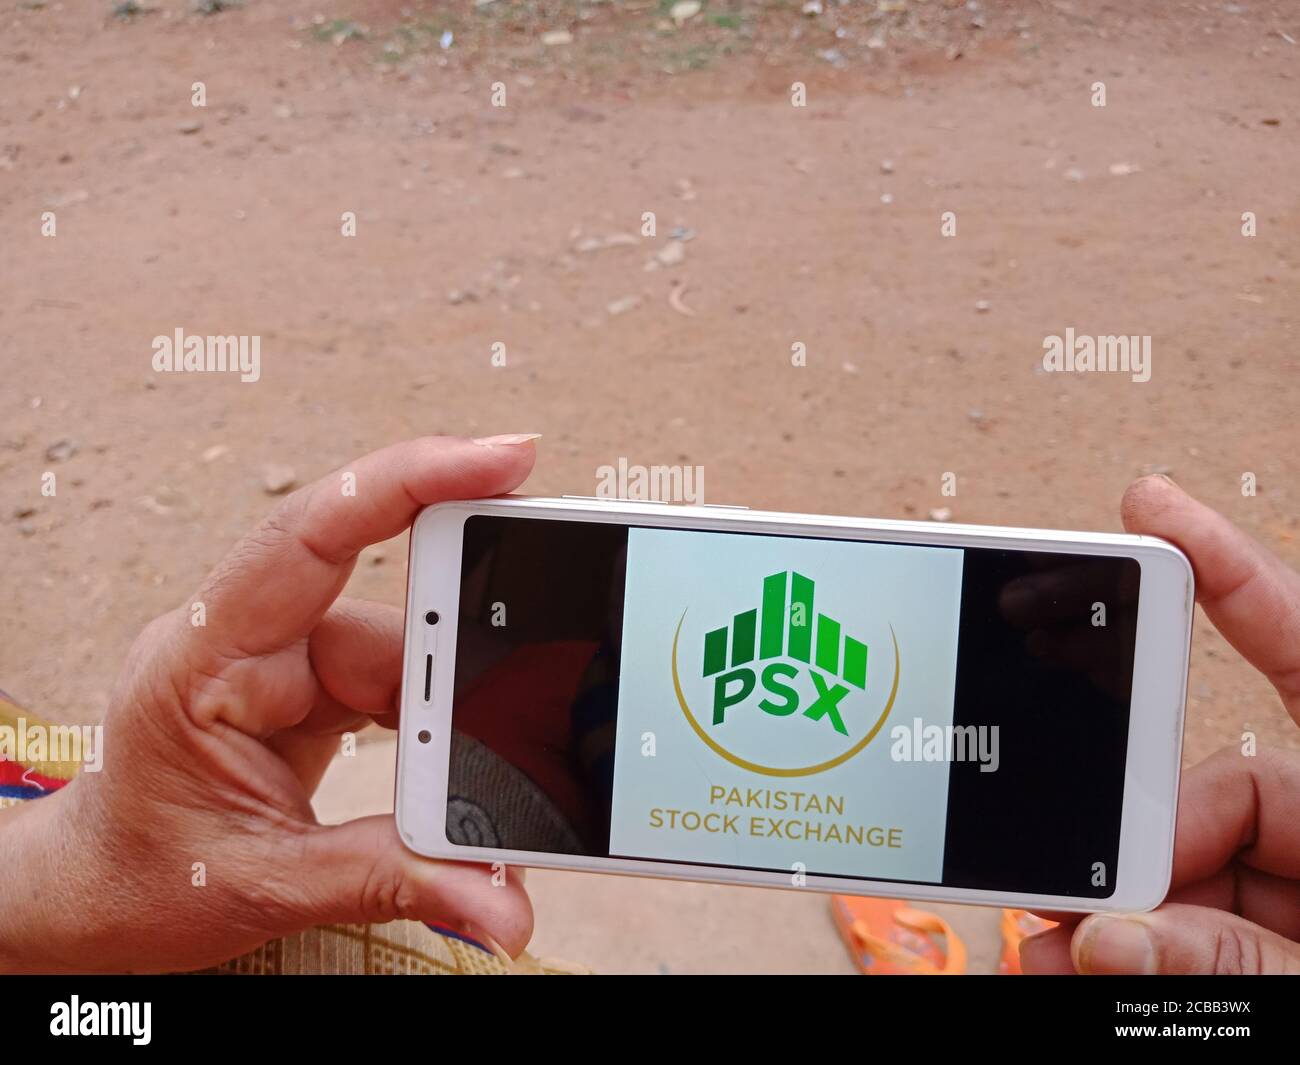 DISTRETTO KATNI, INDIA - 02 GIUGNO 2020: Una donna indiana che detiene smartphone con visualizzazione del logo della Borsa di Pakistan sullo schermo, moderno settore bancario Foto Stock